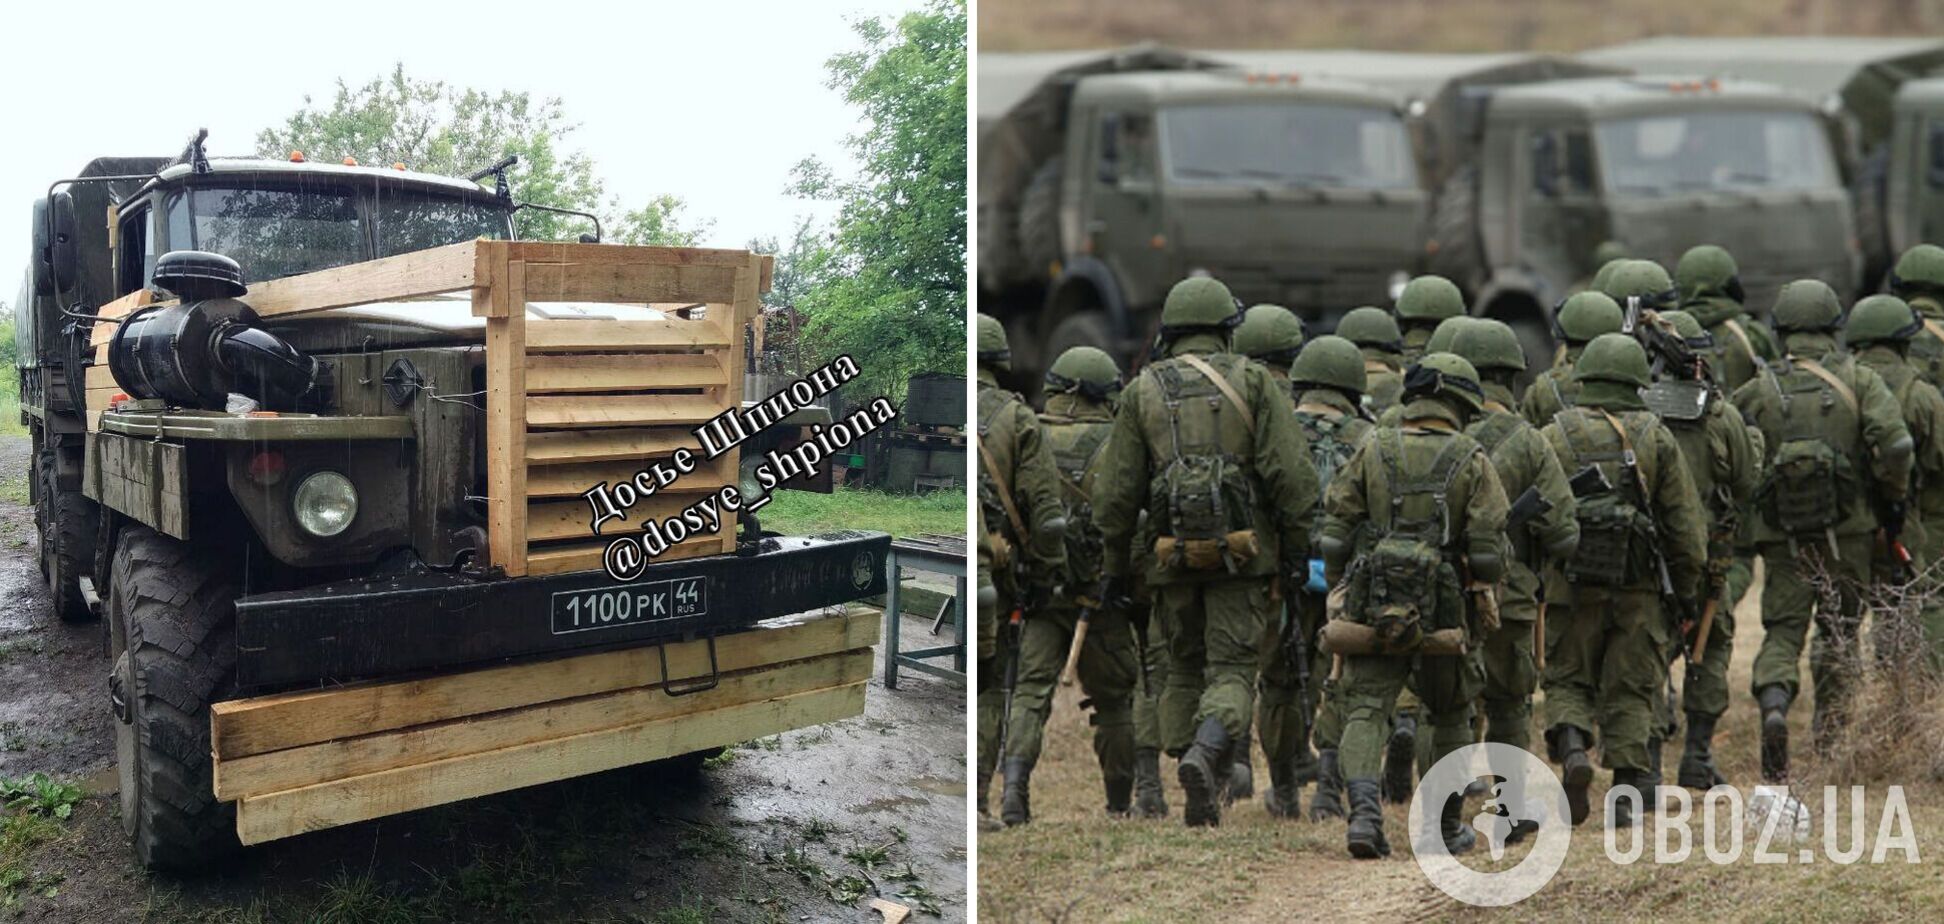 Очередное 'аналоговнет': российские оккупанты усовершенствовали деревянную броню. Фото